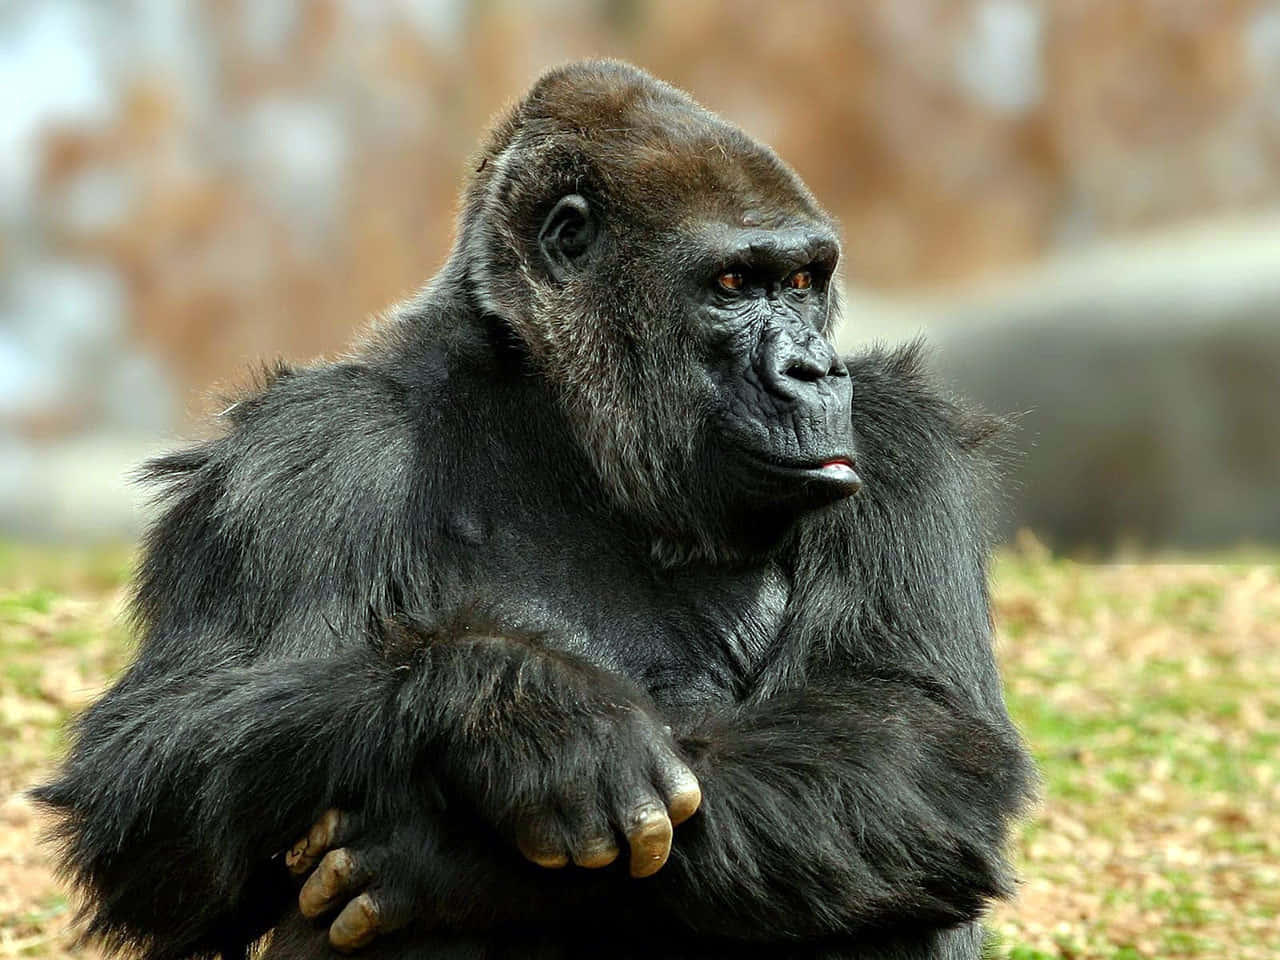 Imagende Un Gorila Negro En Un Zoológico